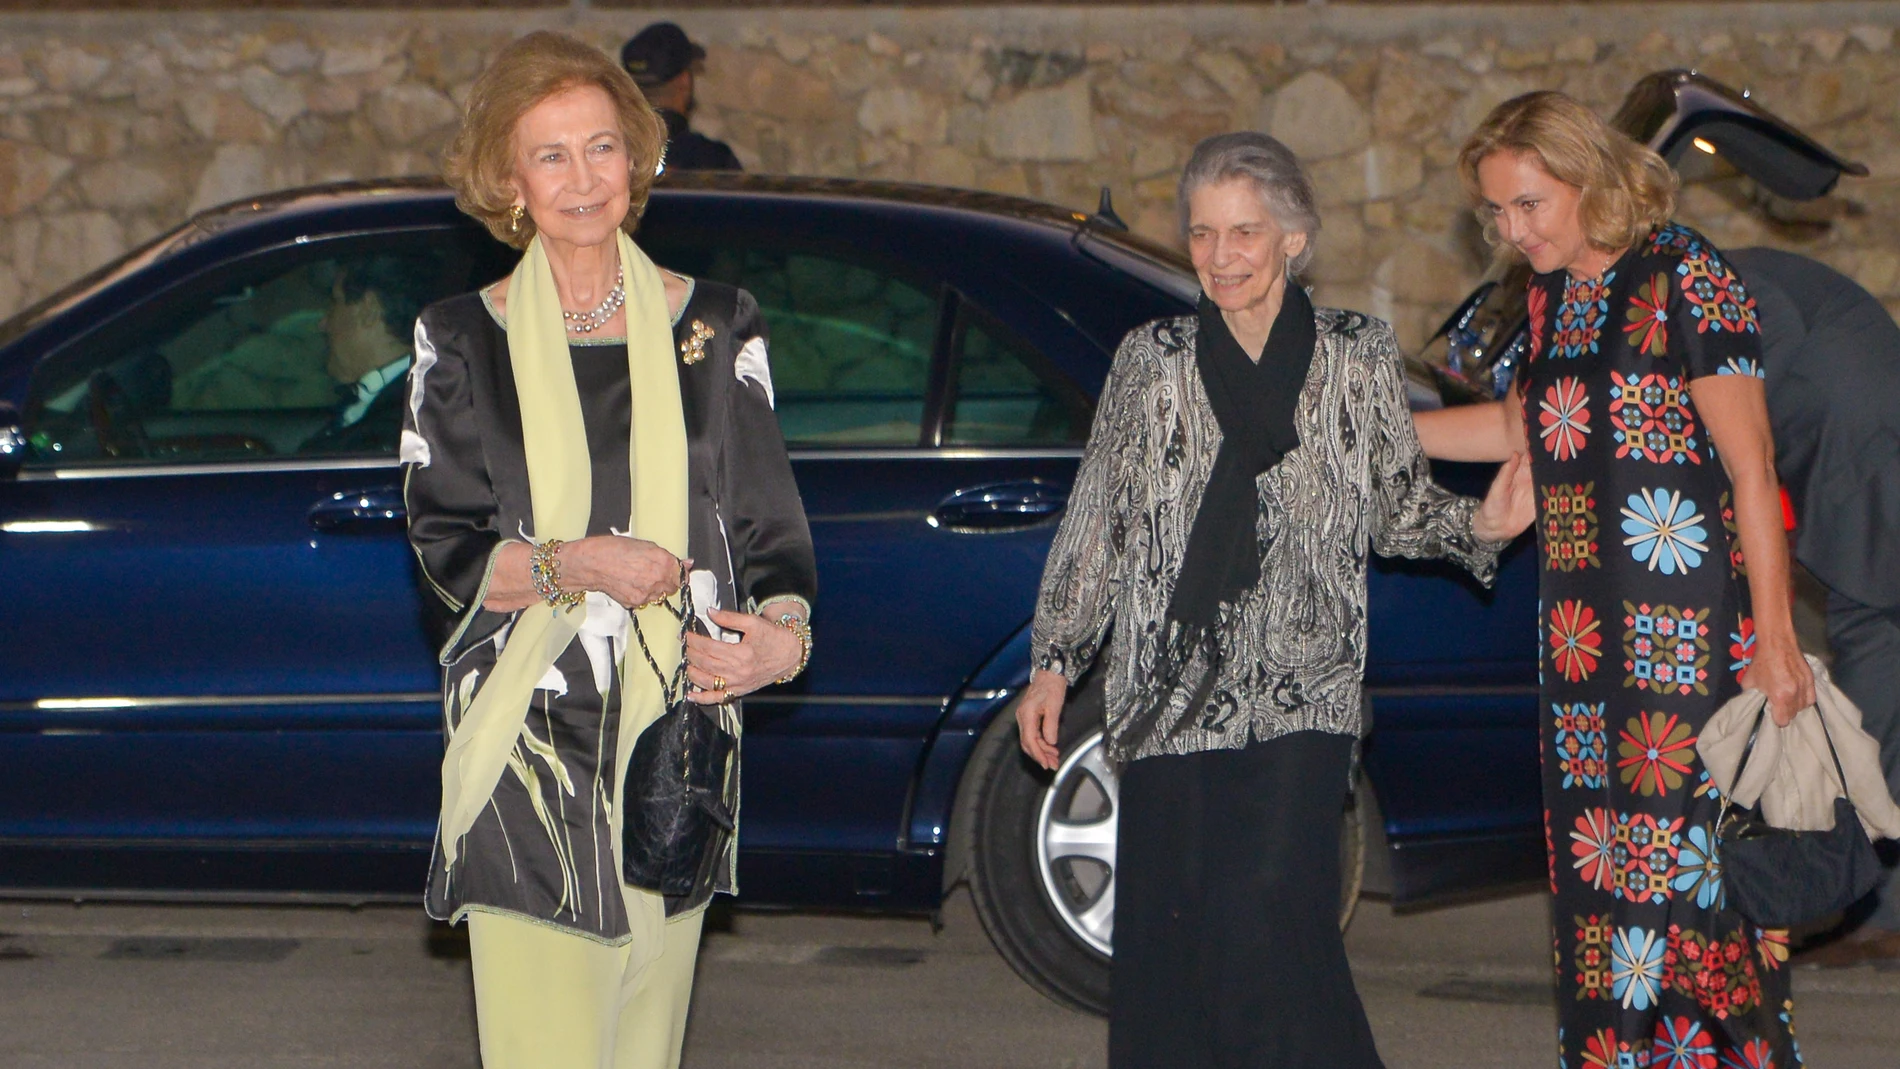 La Reina Sofía (i) e Irene de Grecia (c) a su llegada al concierto de música clásica The Encore Music Festival en Marbella. EFE/Antonio Paz